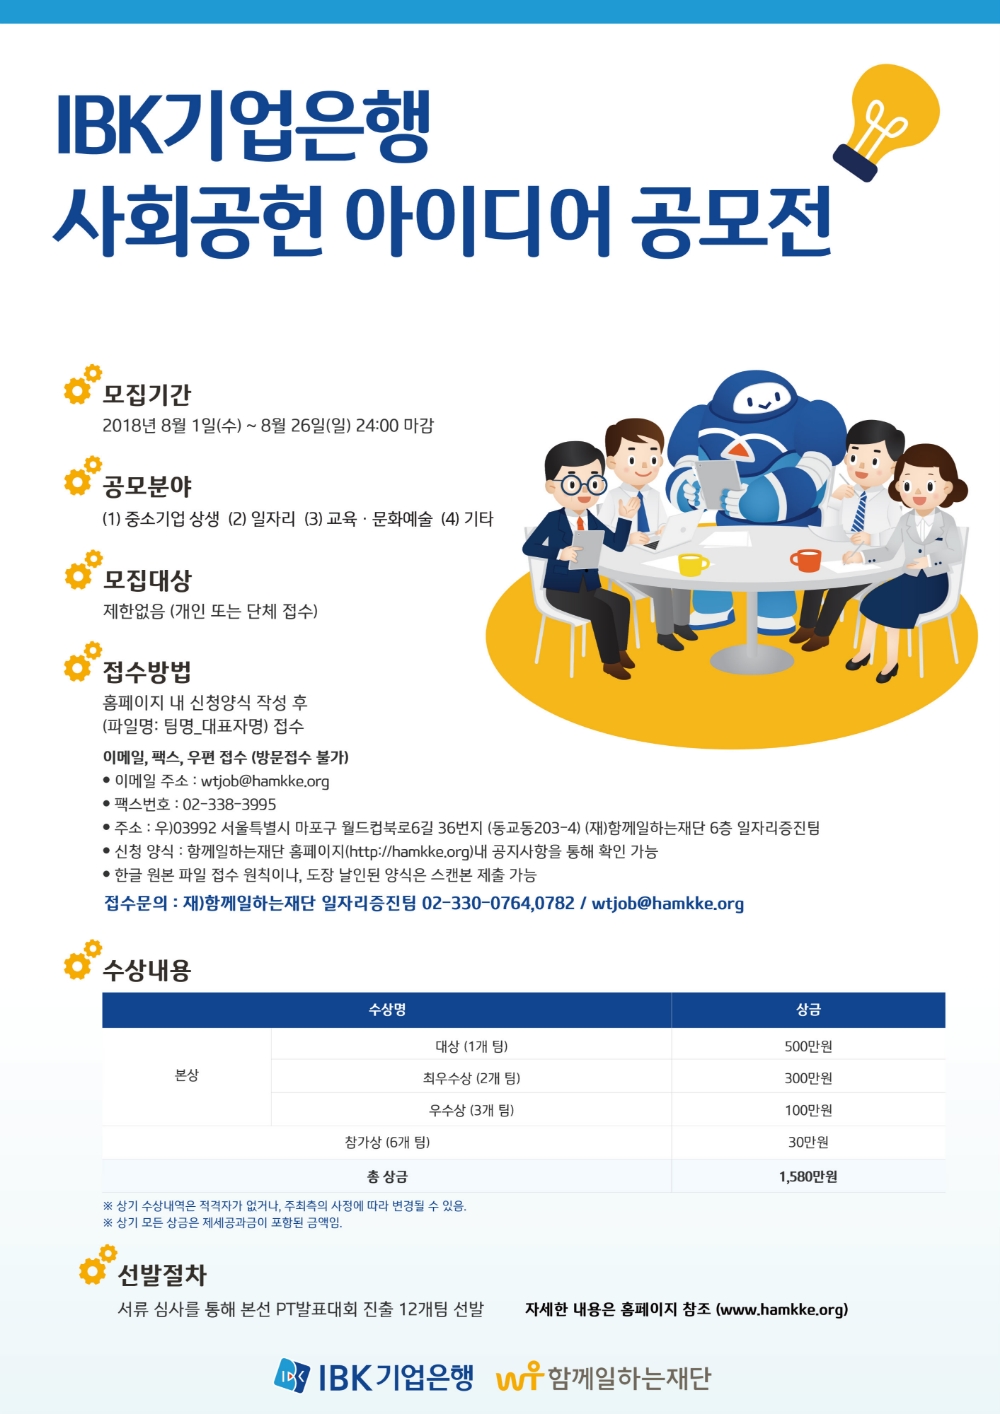 IBK기업은행, 사회공헌 아이디어 공모전 개최